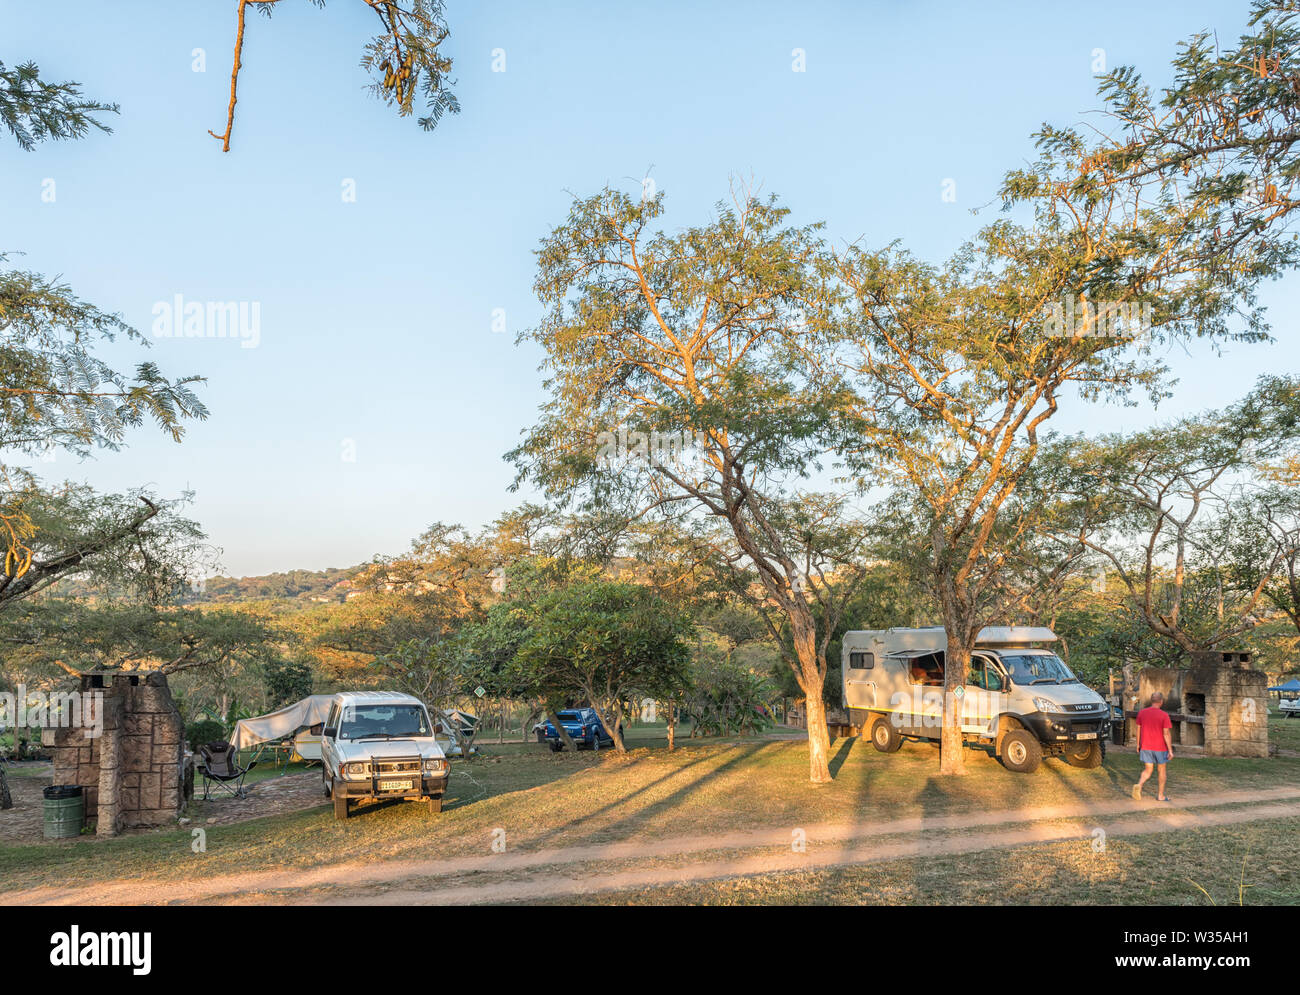 NELSPRUIT, SÜDAFRIKA - Mai 2, 2019: ein Reisemobil, Caravan und die Fahrzeuge am Lakeview Lodge und Caravan Park in Mpumalanga Nelspruit in der Provinc Stockfoto